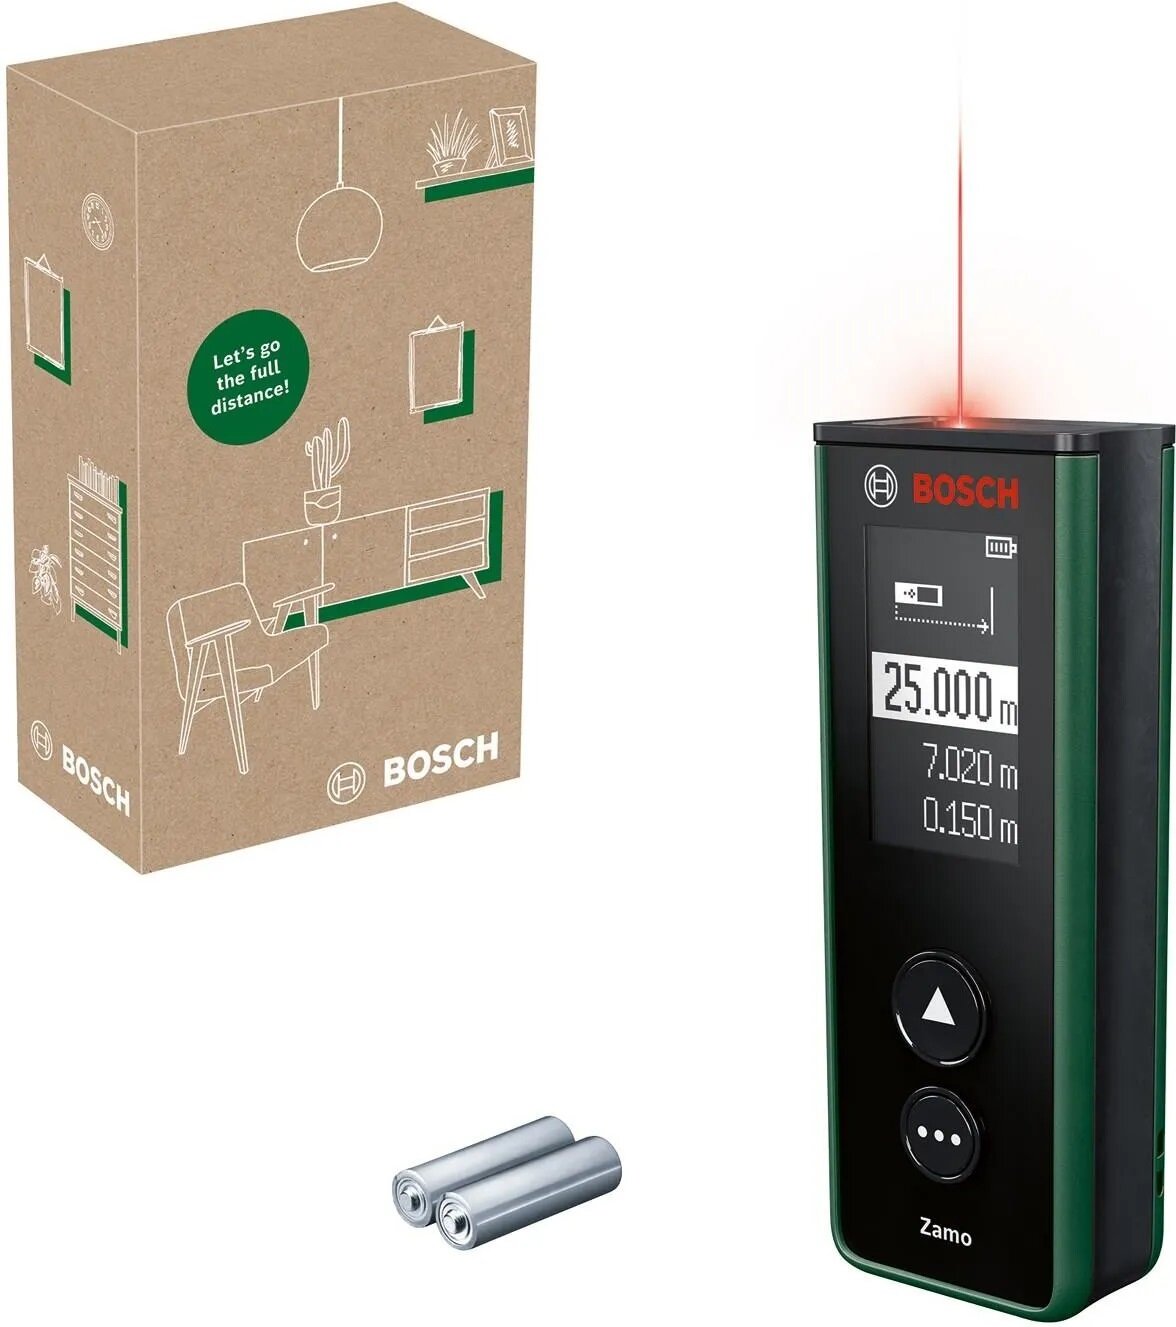 Dalmierz laserowy Bosch Zamo widok na urządzenie i opakowanie pod skosem